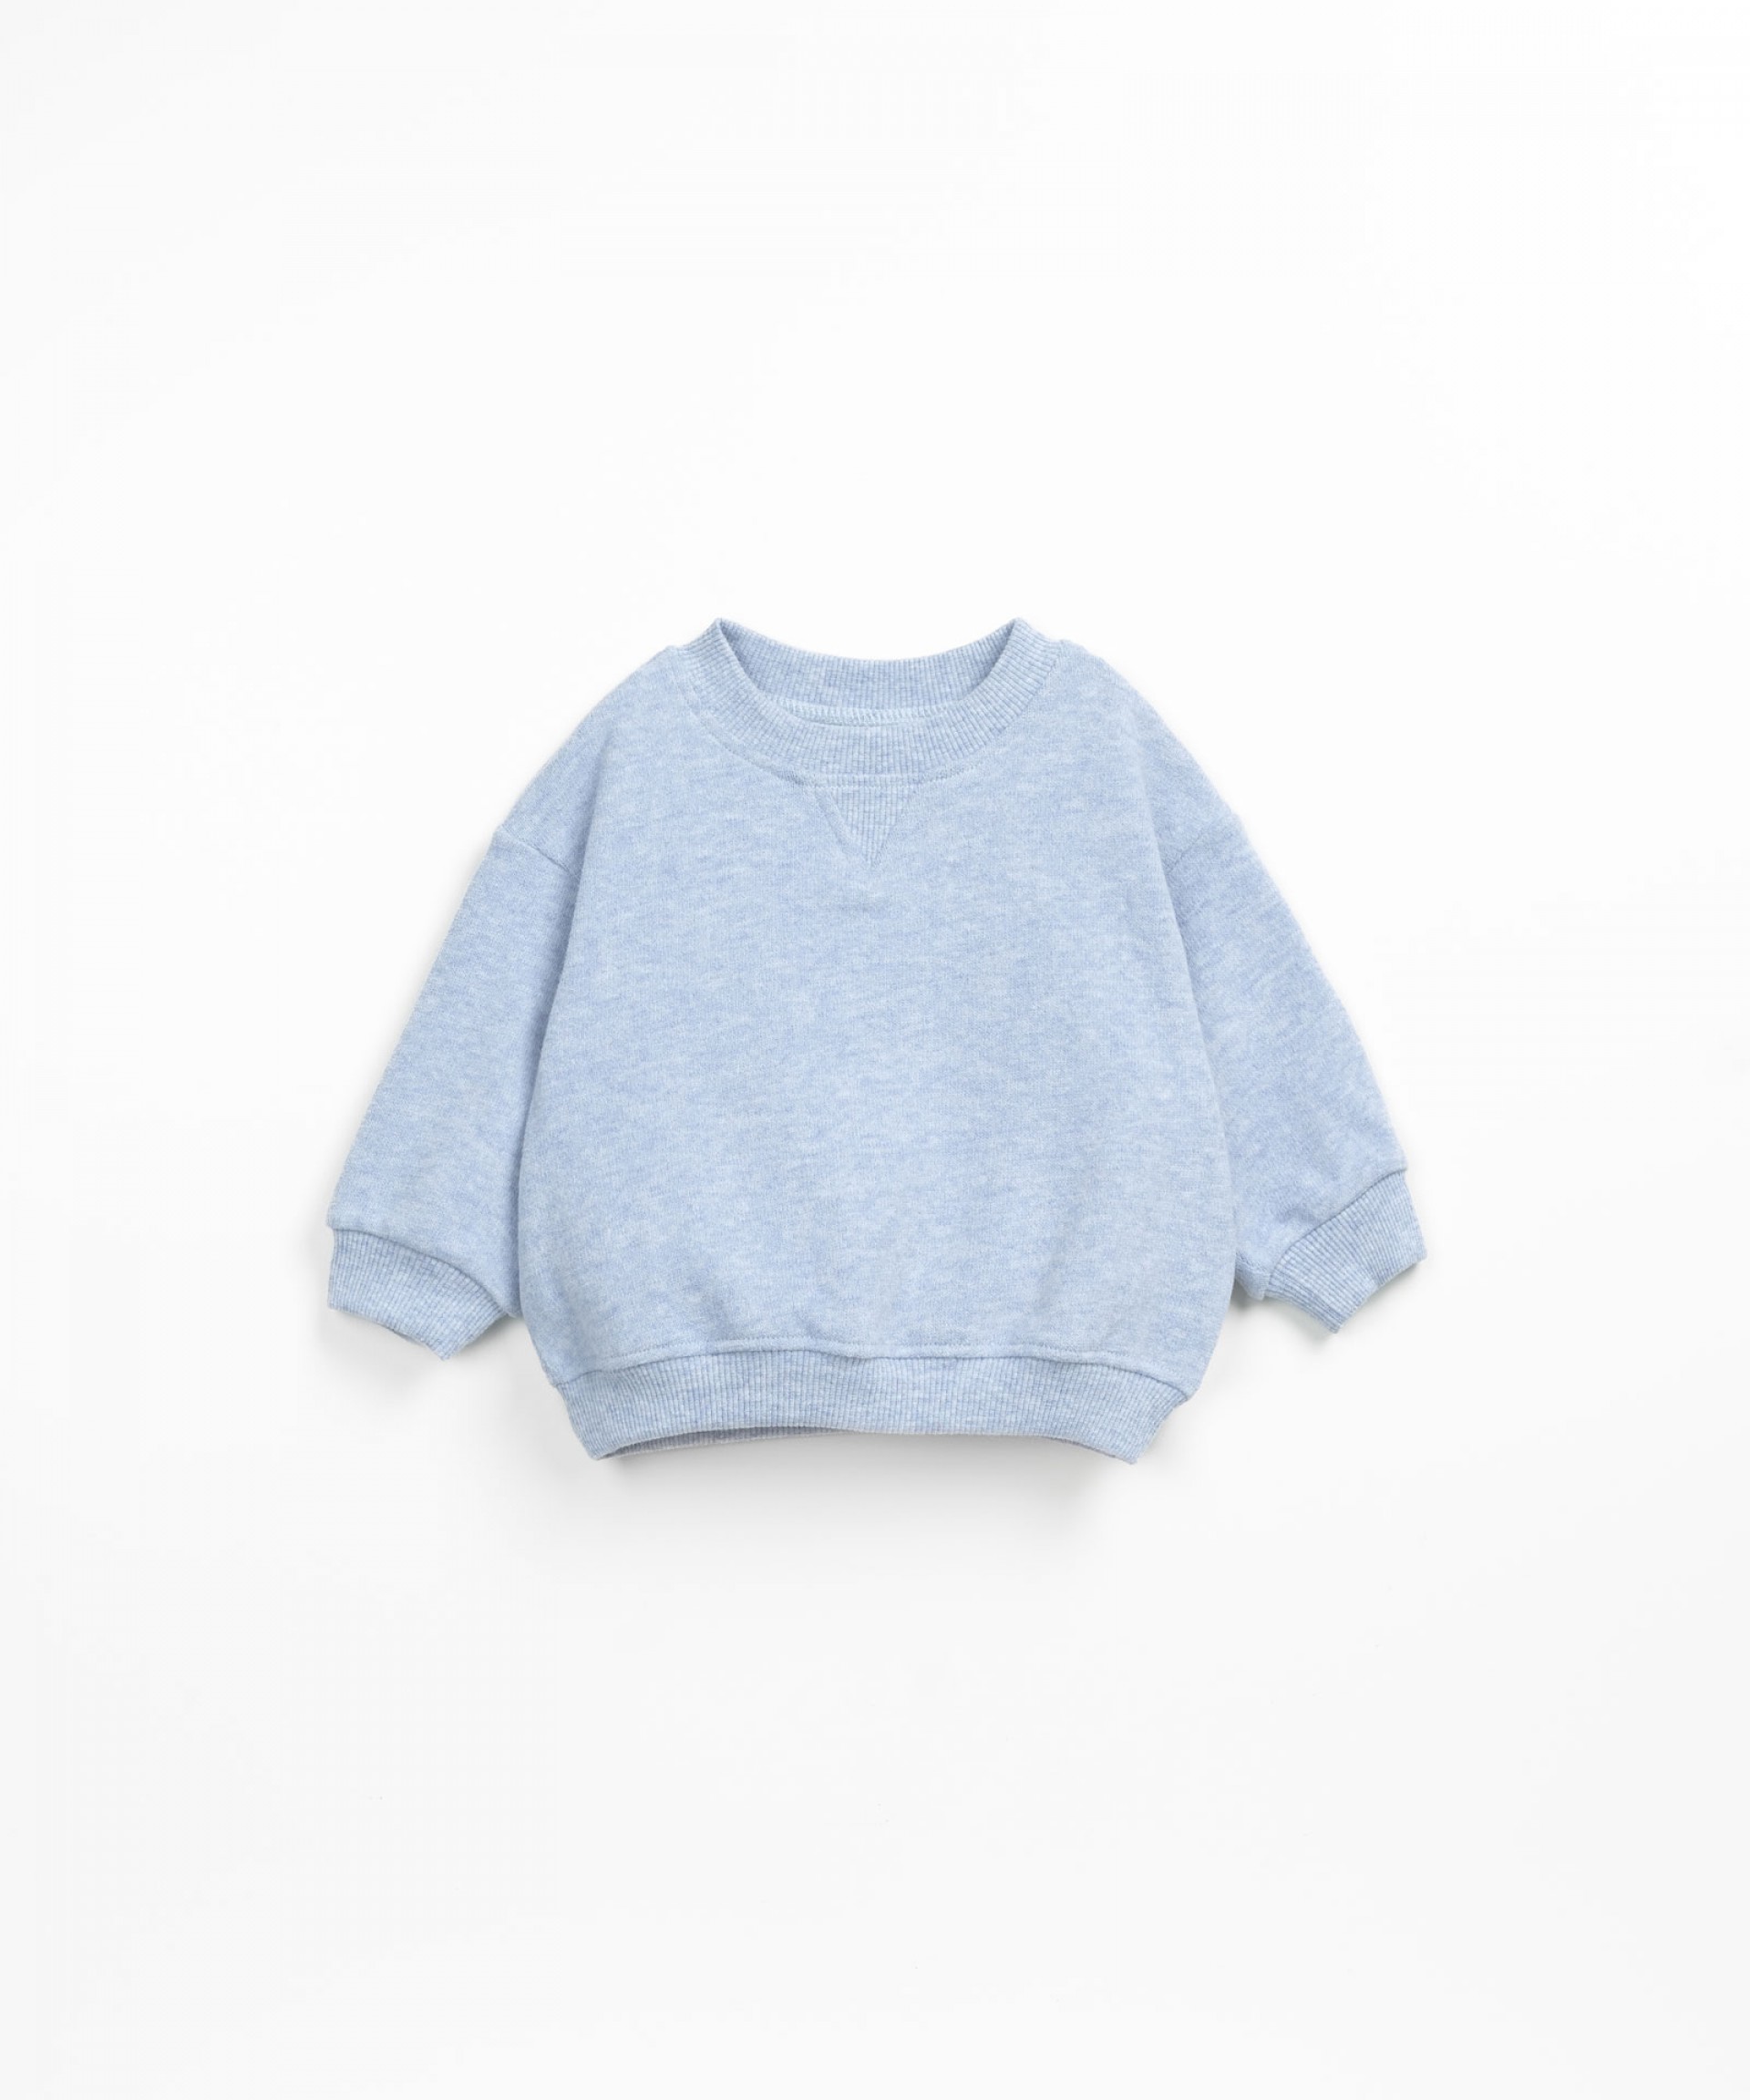 Plain sweater with a neck line detail | Textile Art